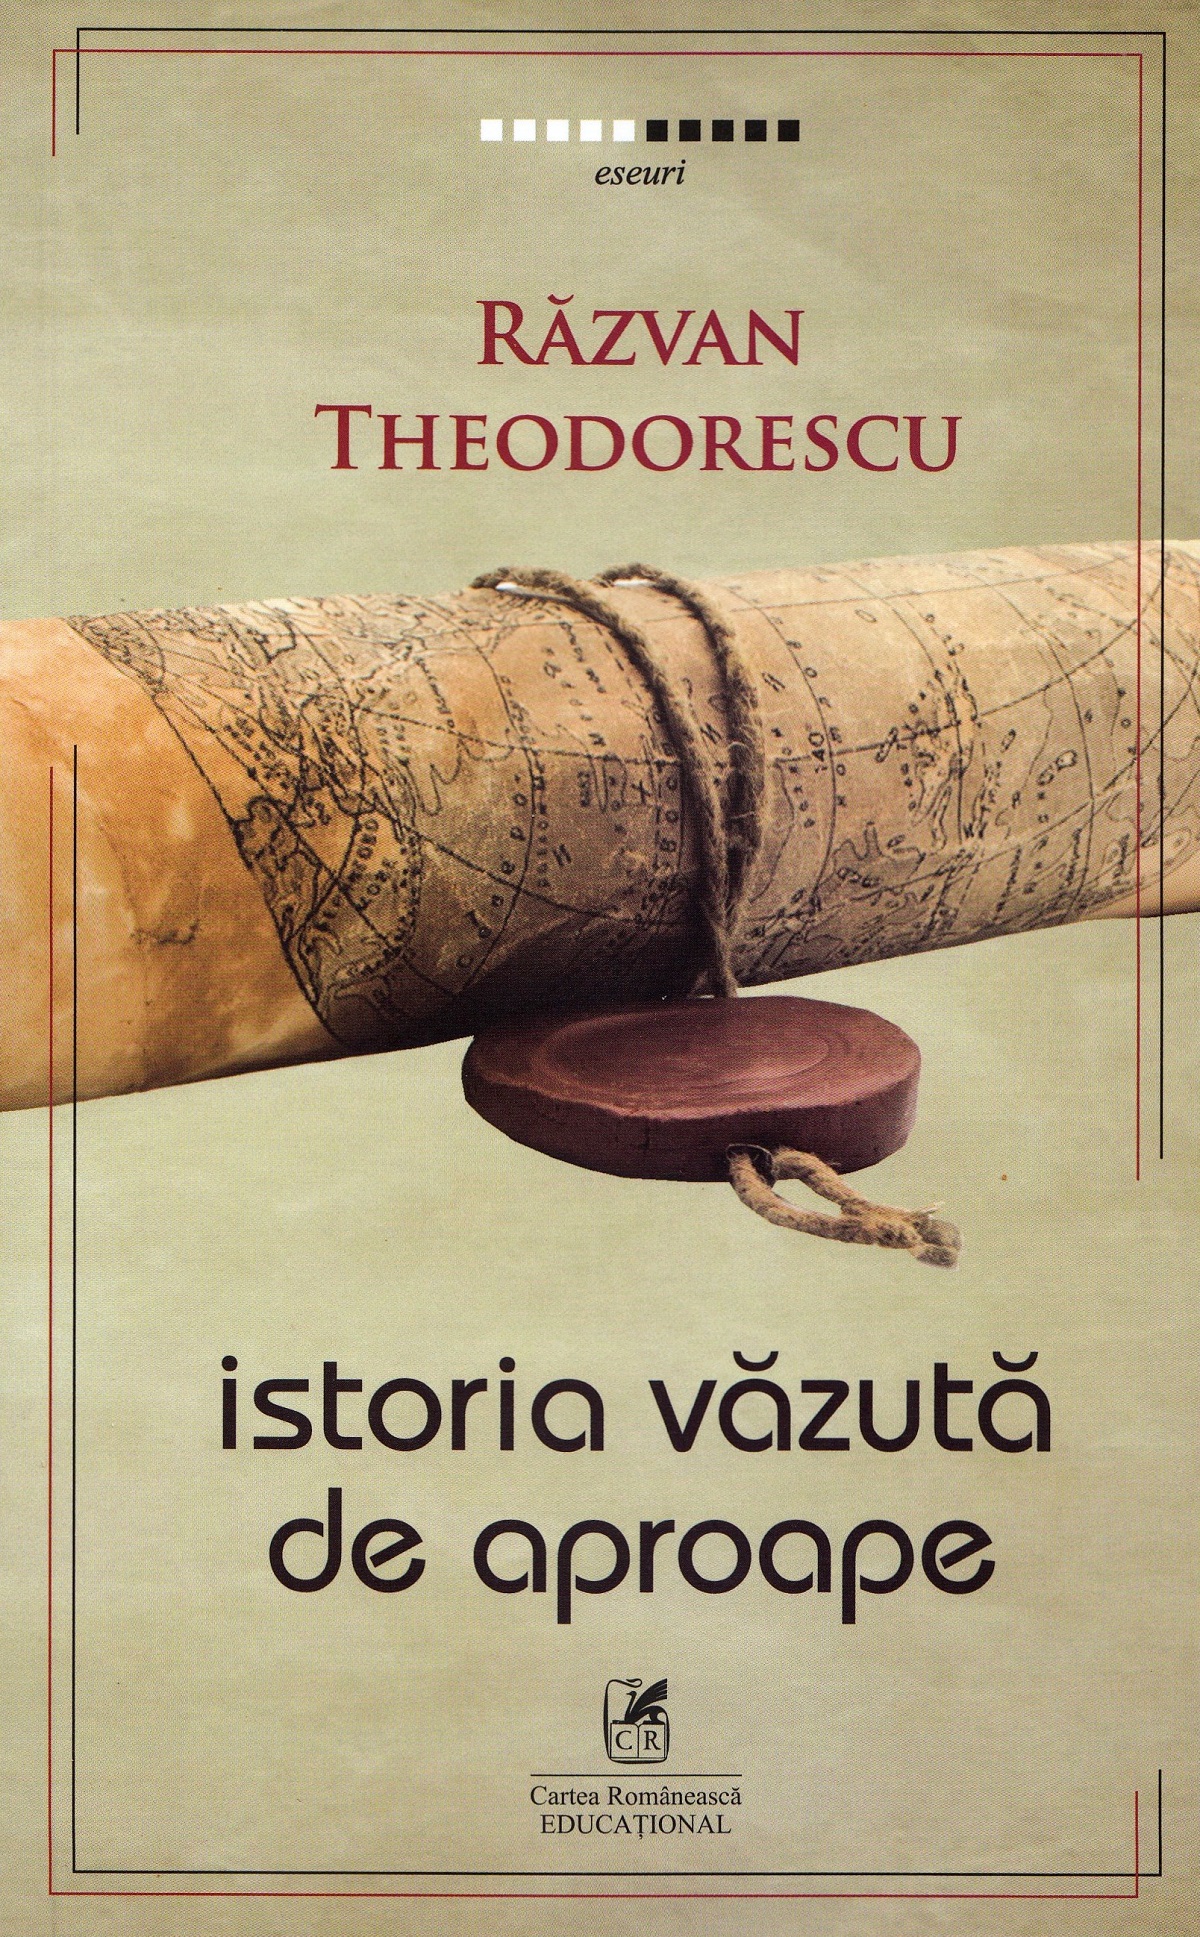 PDF Istoria vazuta de aproape | Razvan Theodorescu Cartea Romaneasca educational Carte